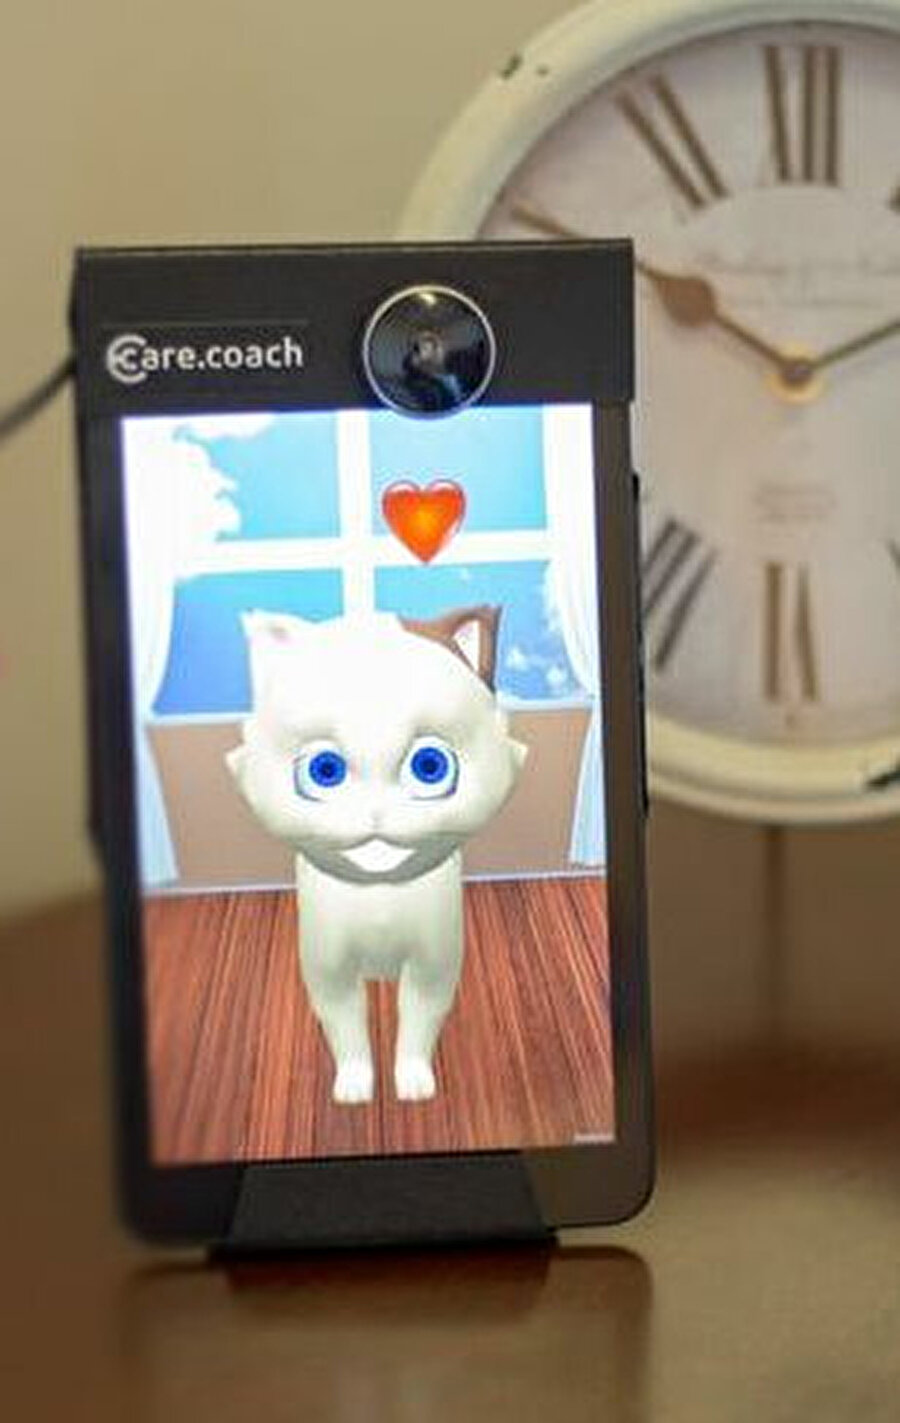 Care Coach tarafından üretilen dijital hayvanlar, kullanıcılara 24 saat destek veriyor.